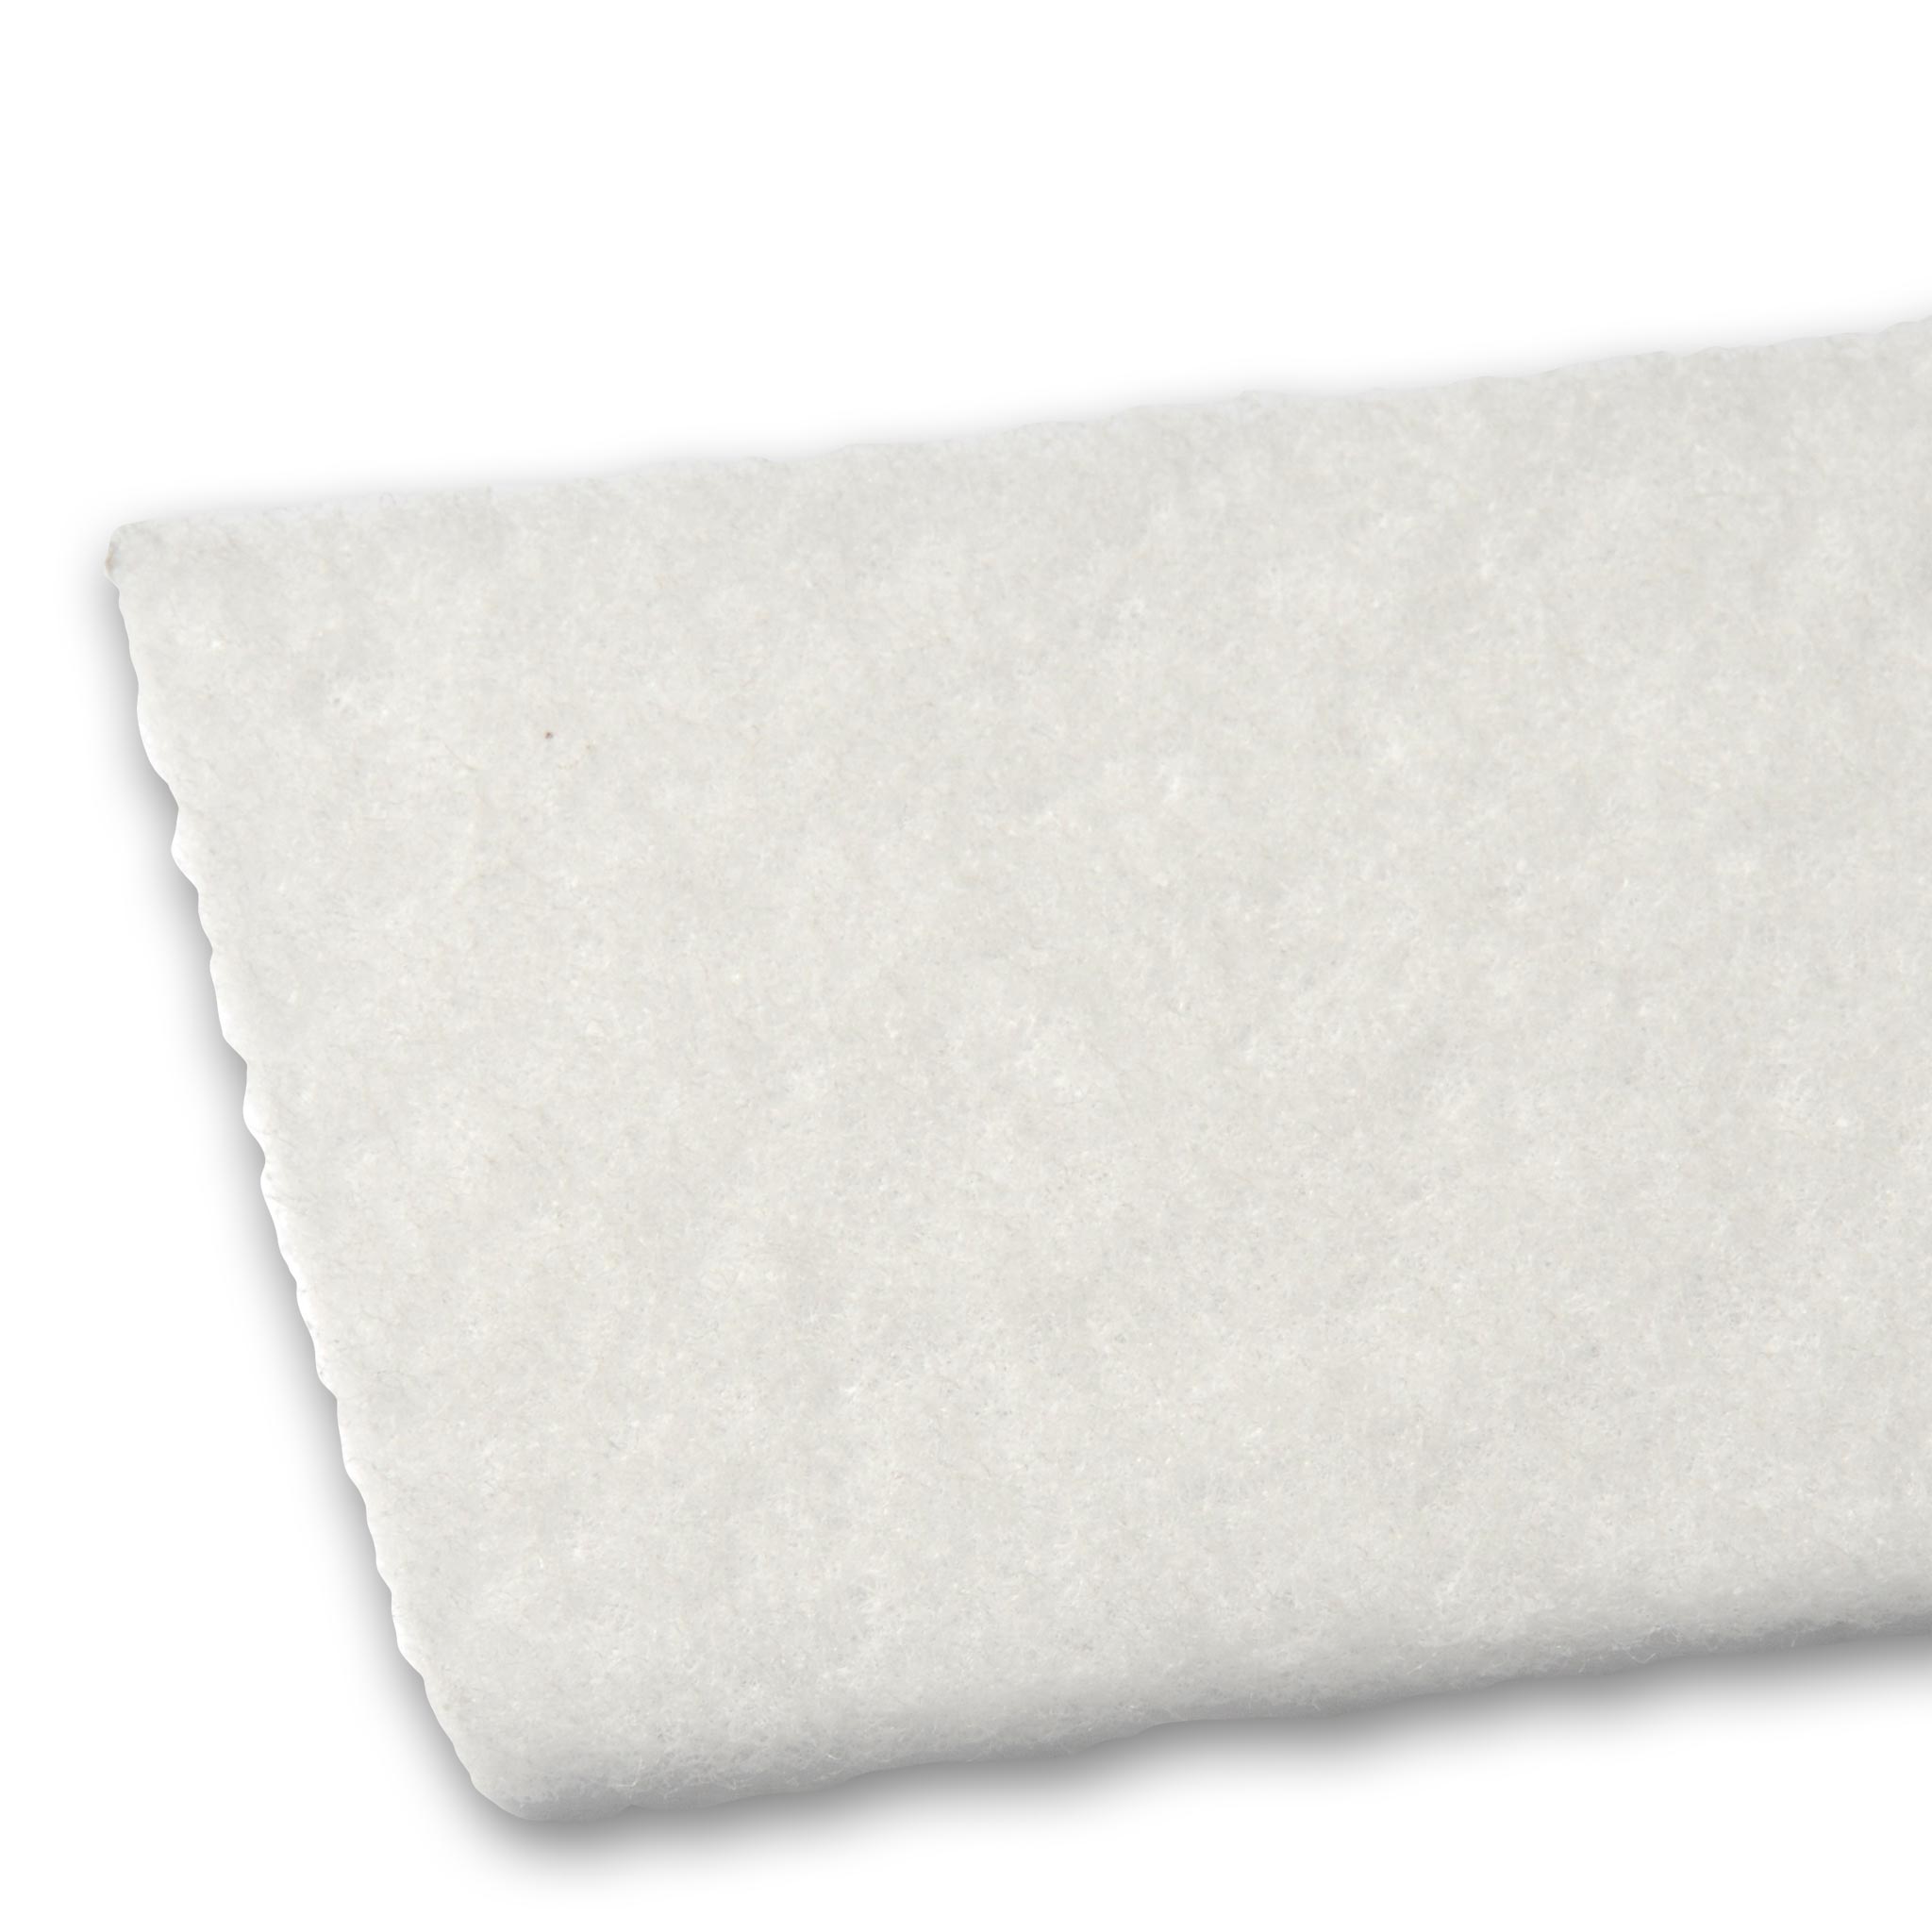 White Thin-line Pad